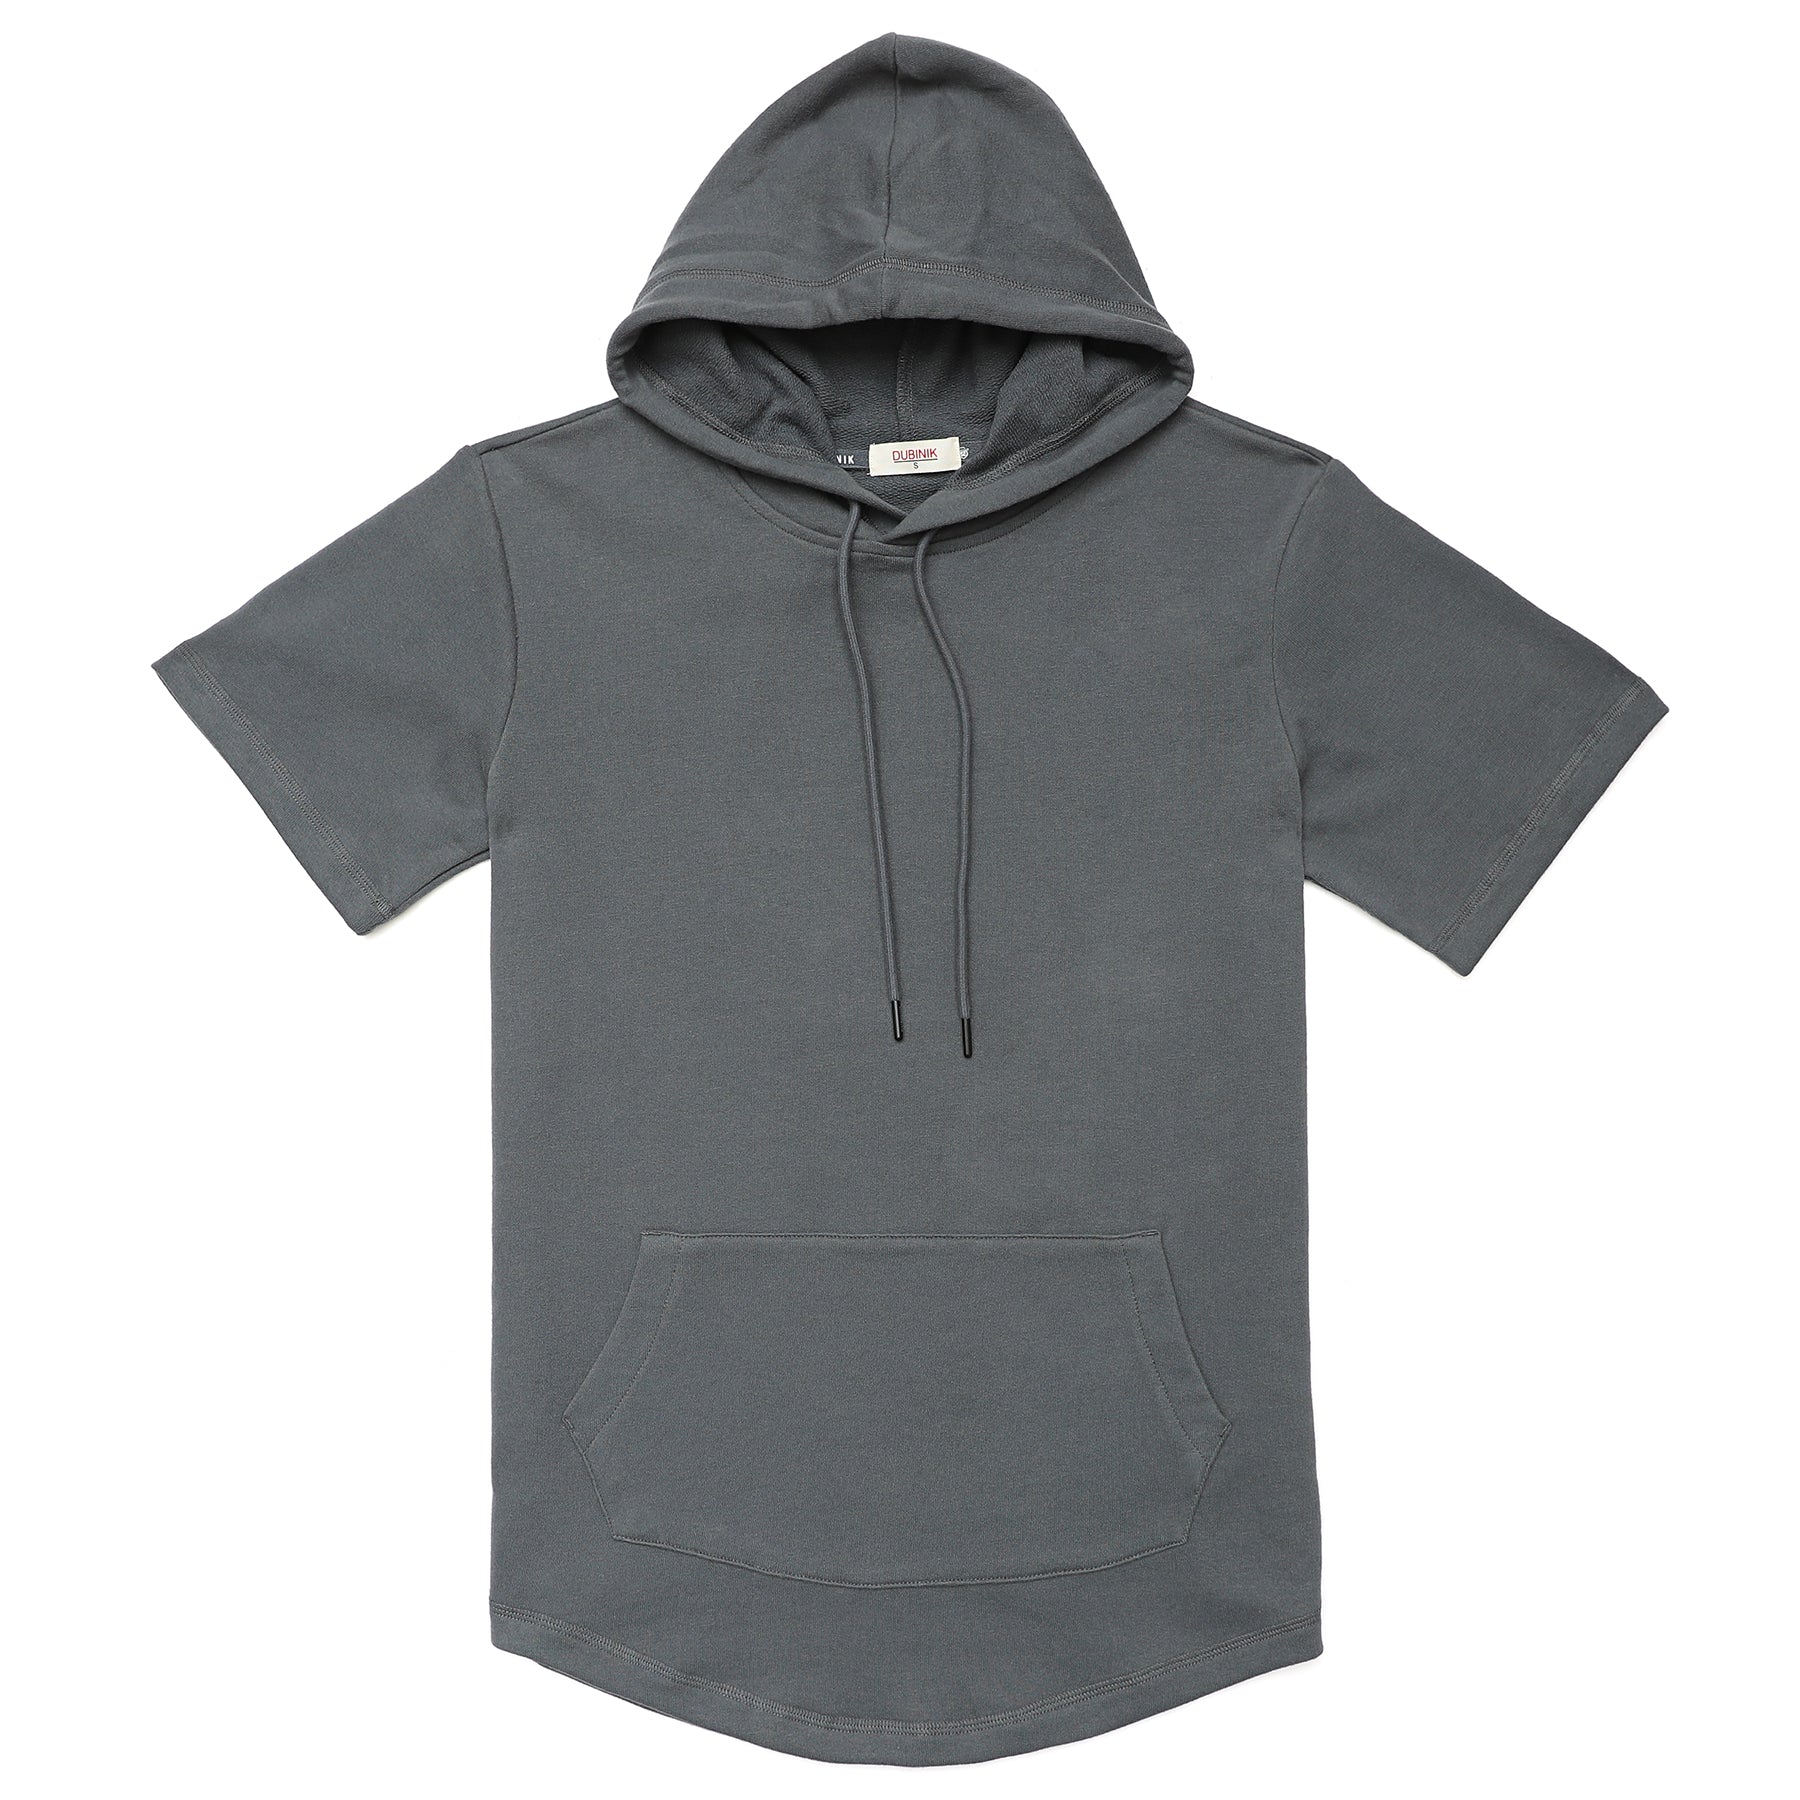 Men's Hoodies short-sleeved hooded sweatshirt #0614